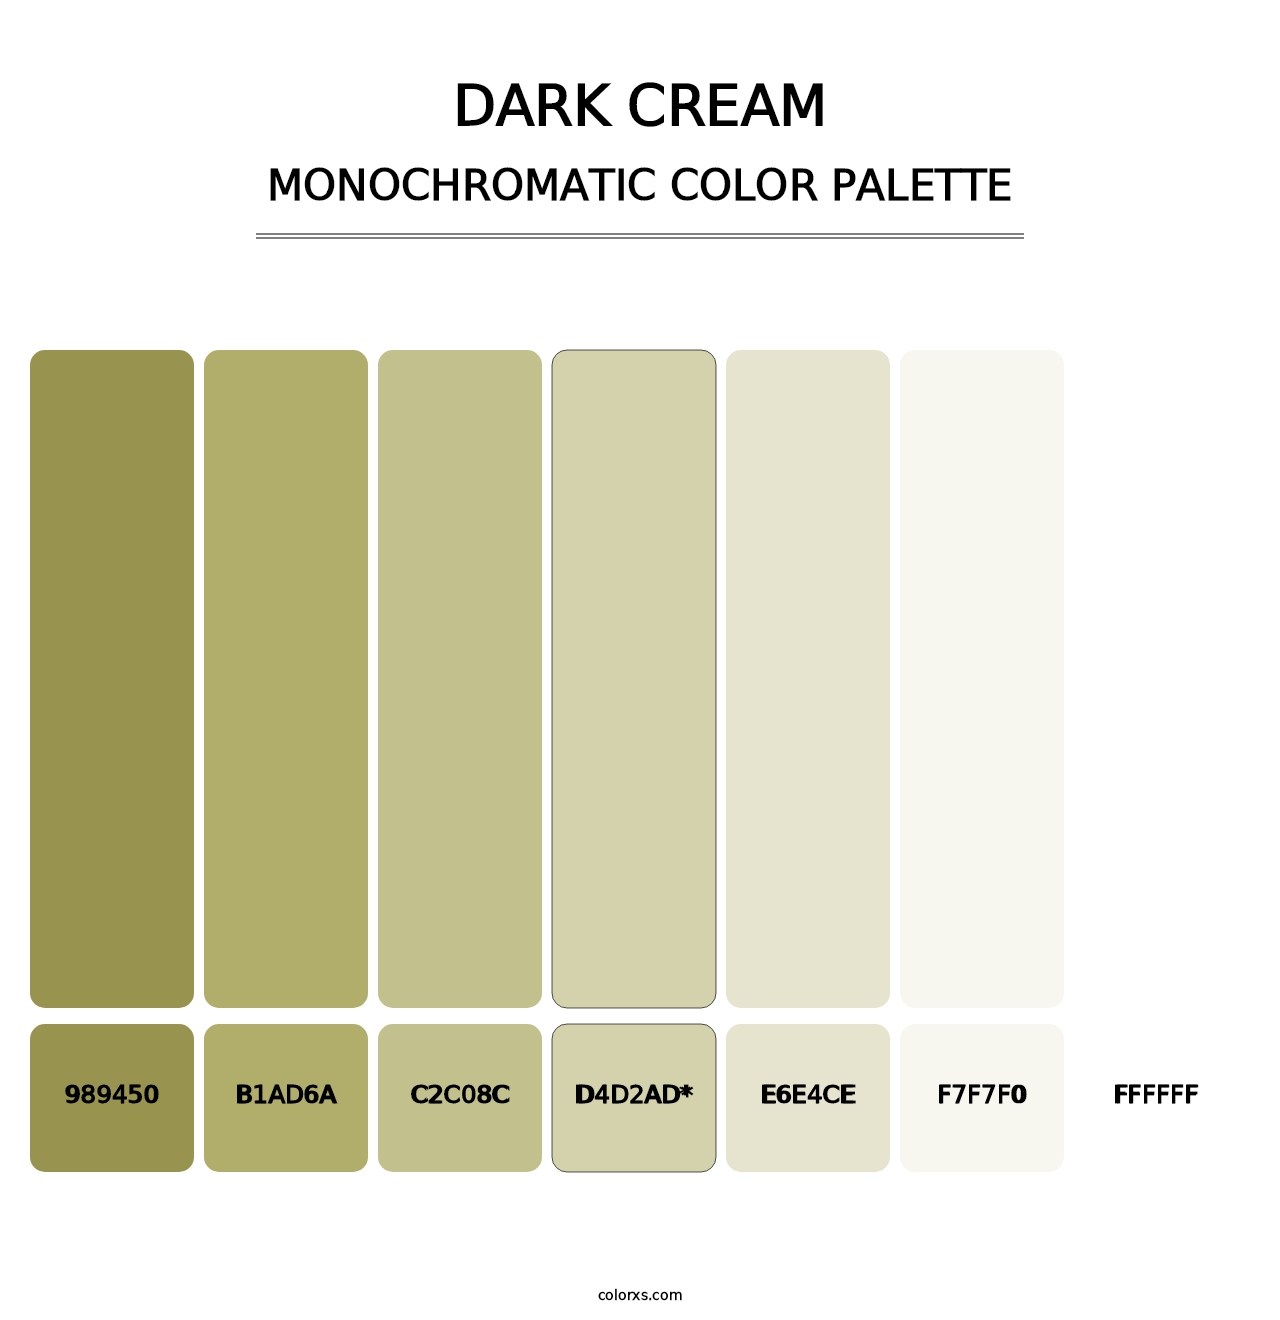 Dark Cream - Monochromatic Color Palette